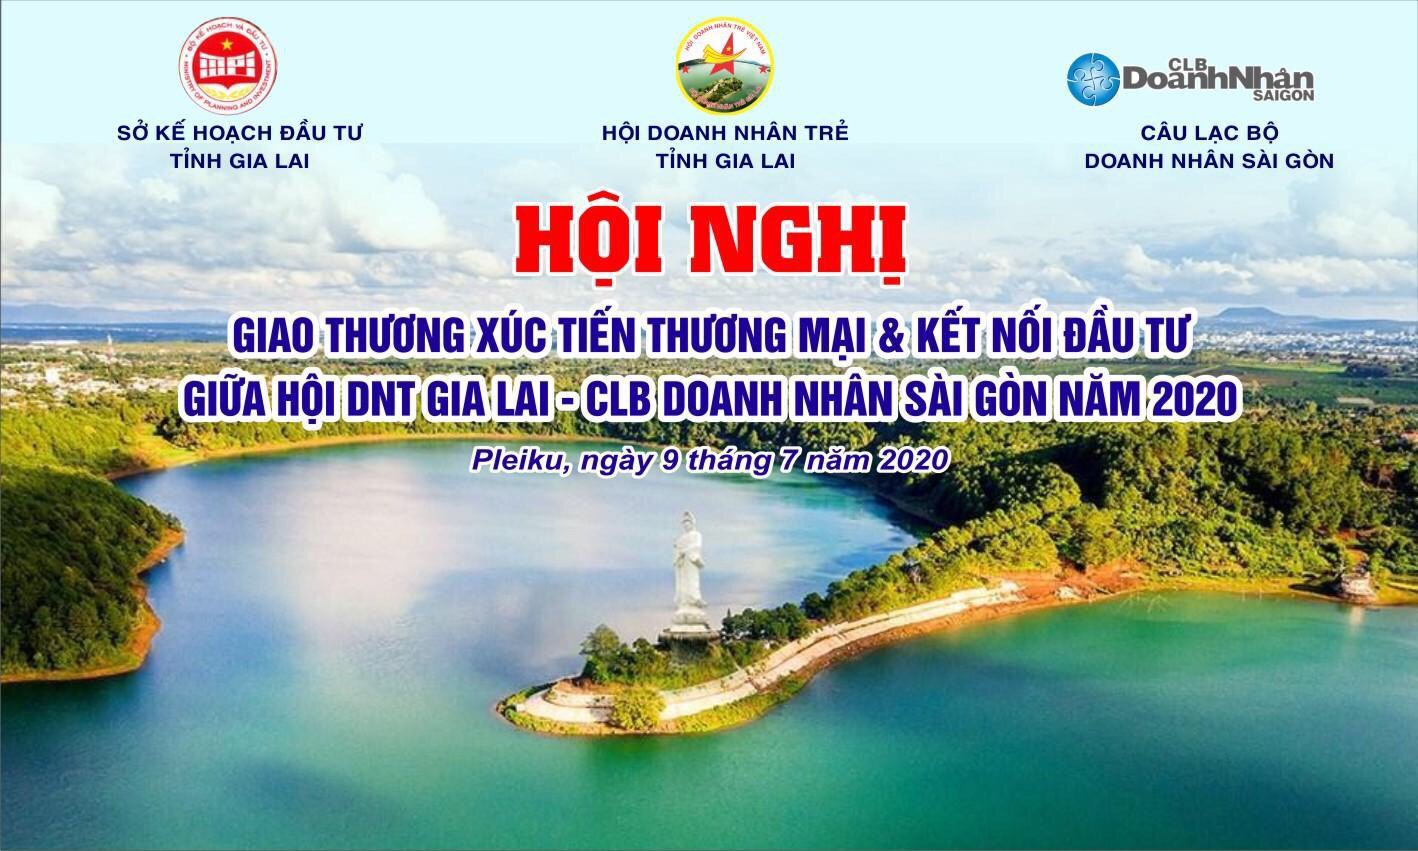 Khởi động Caravan TP.HCM – Buôn Ma Thuột – Pleiku – Nha Trang năm 2020 với chủ đề “Kết nối – Yêu thương” từ 08 – 12/7/2020